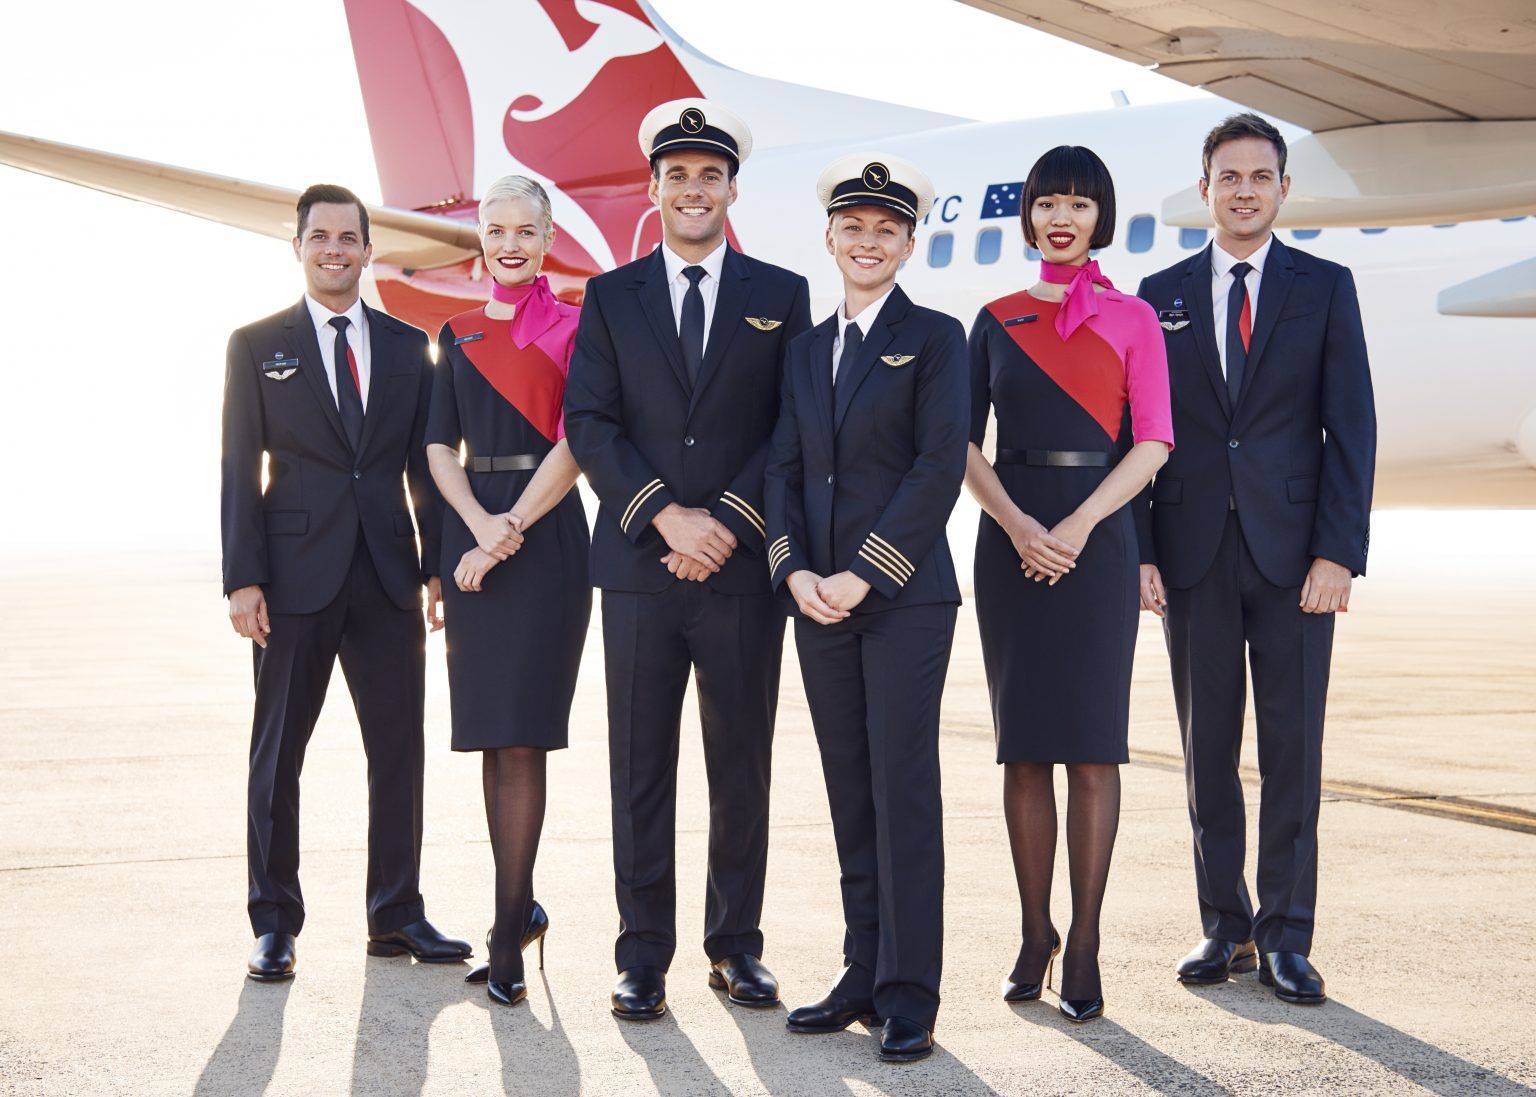 Qantas cabin crew pilots and aircraft